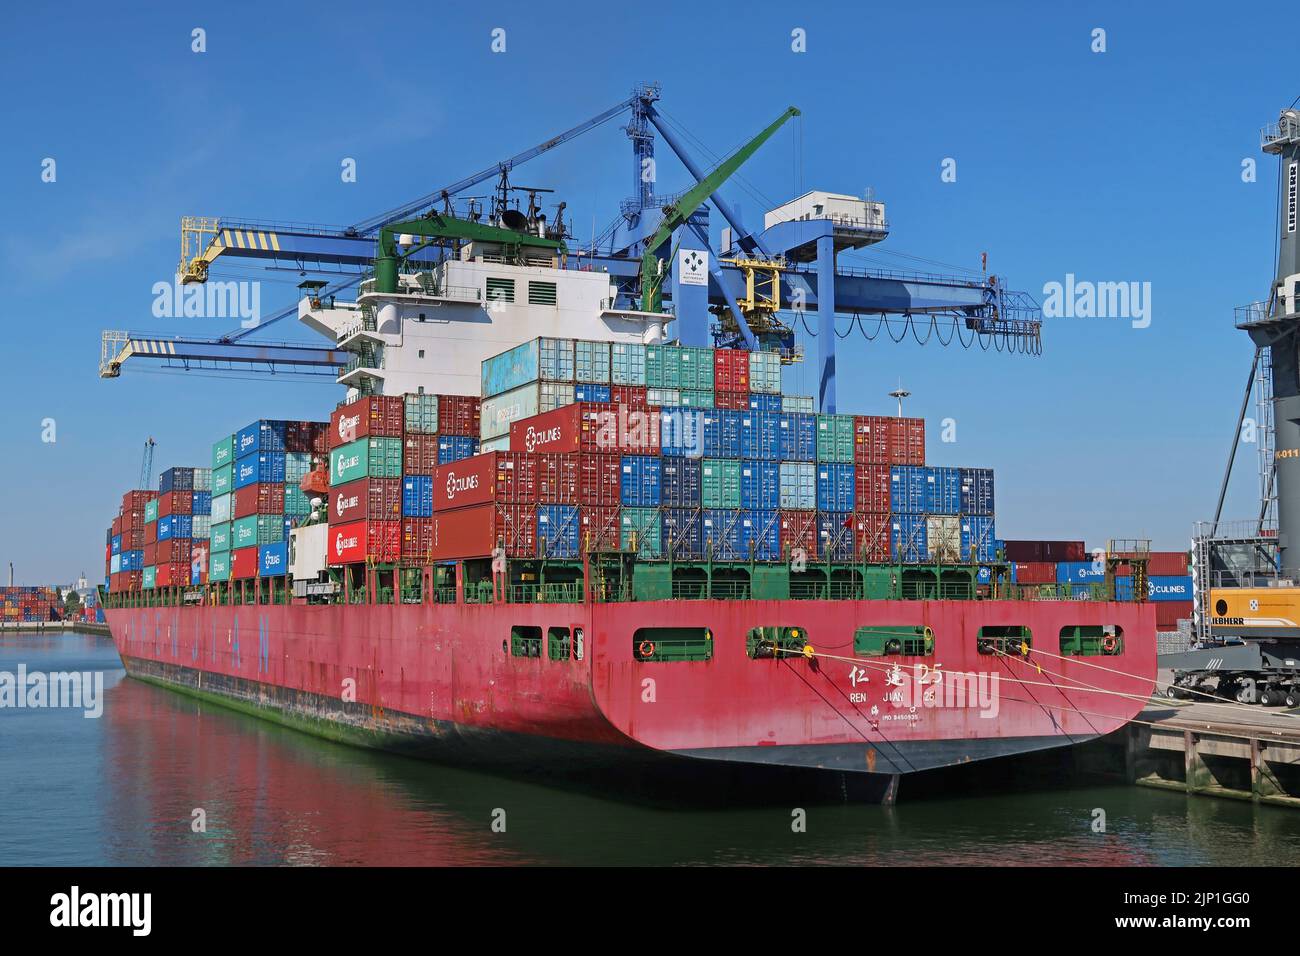 Le navire chinois à conteneurs Ren Jian 25 est ancré dans le port de Rotterdam, aux pays-Bas. Banque D'Images